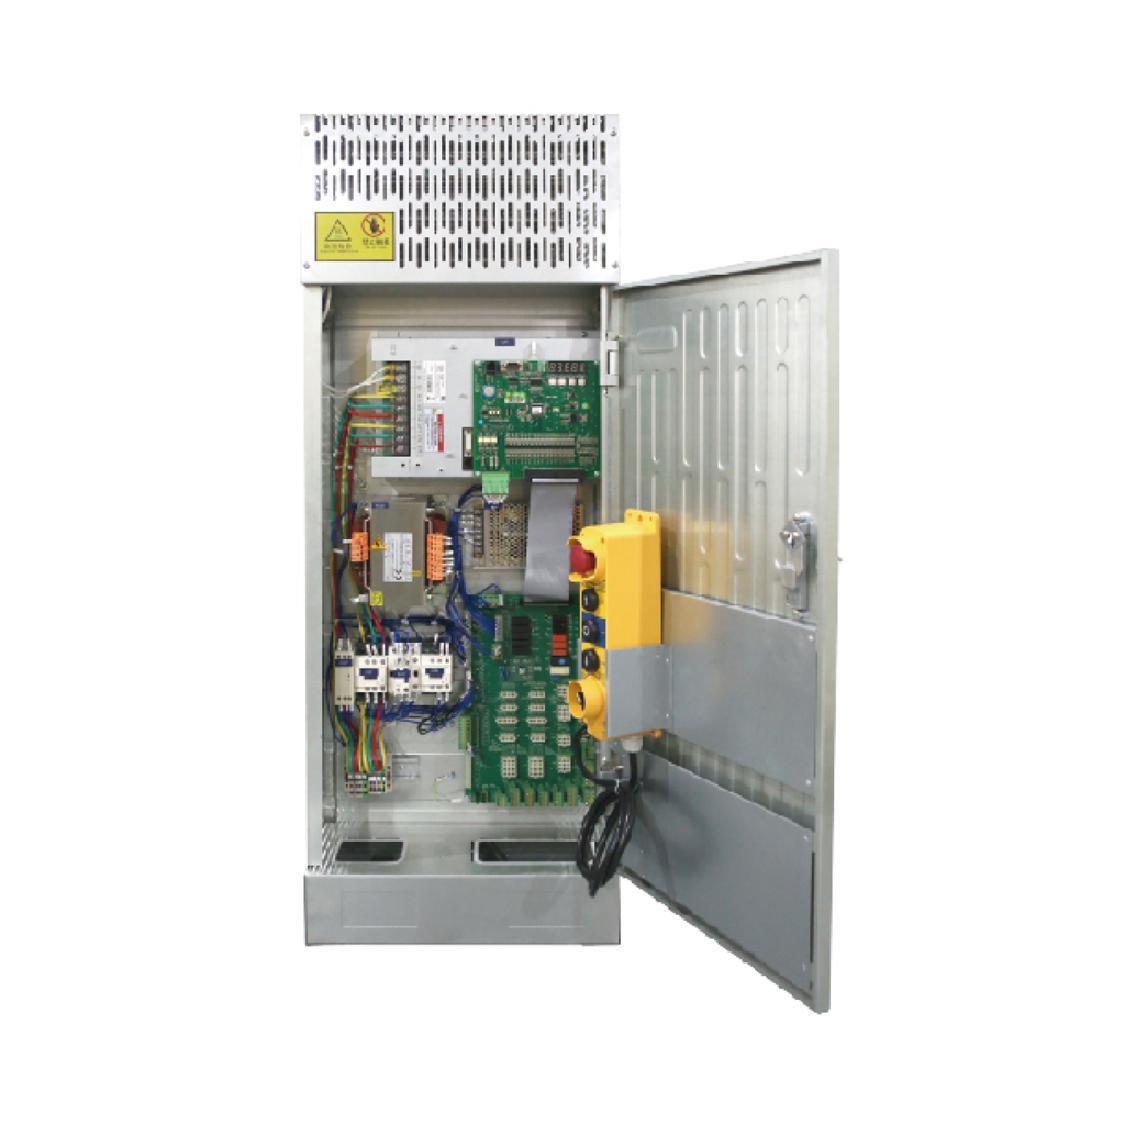 C7000系列一体化控制柜